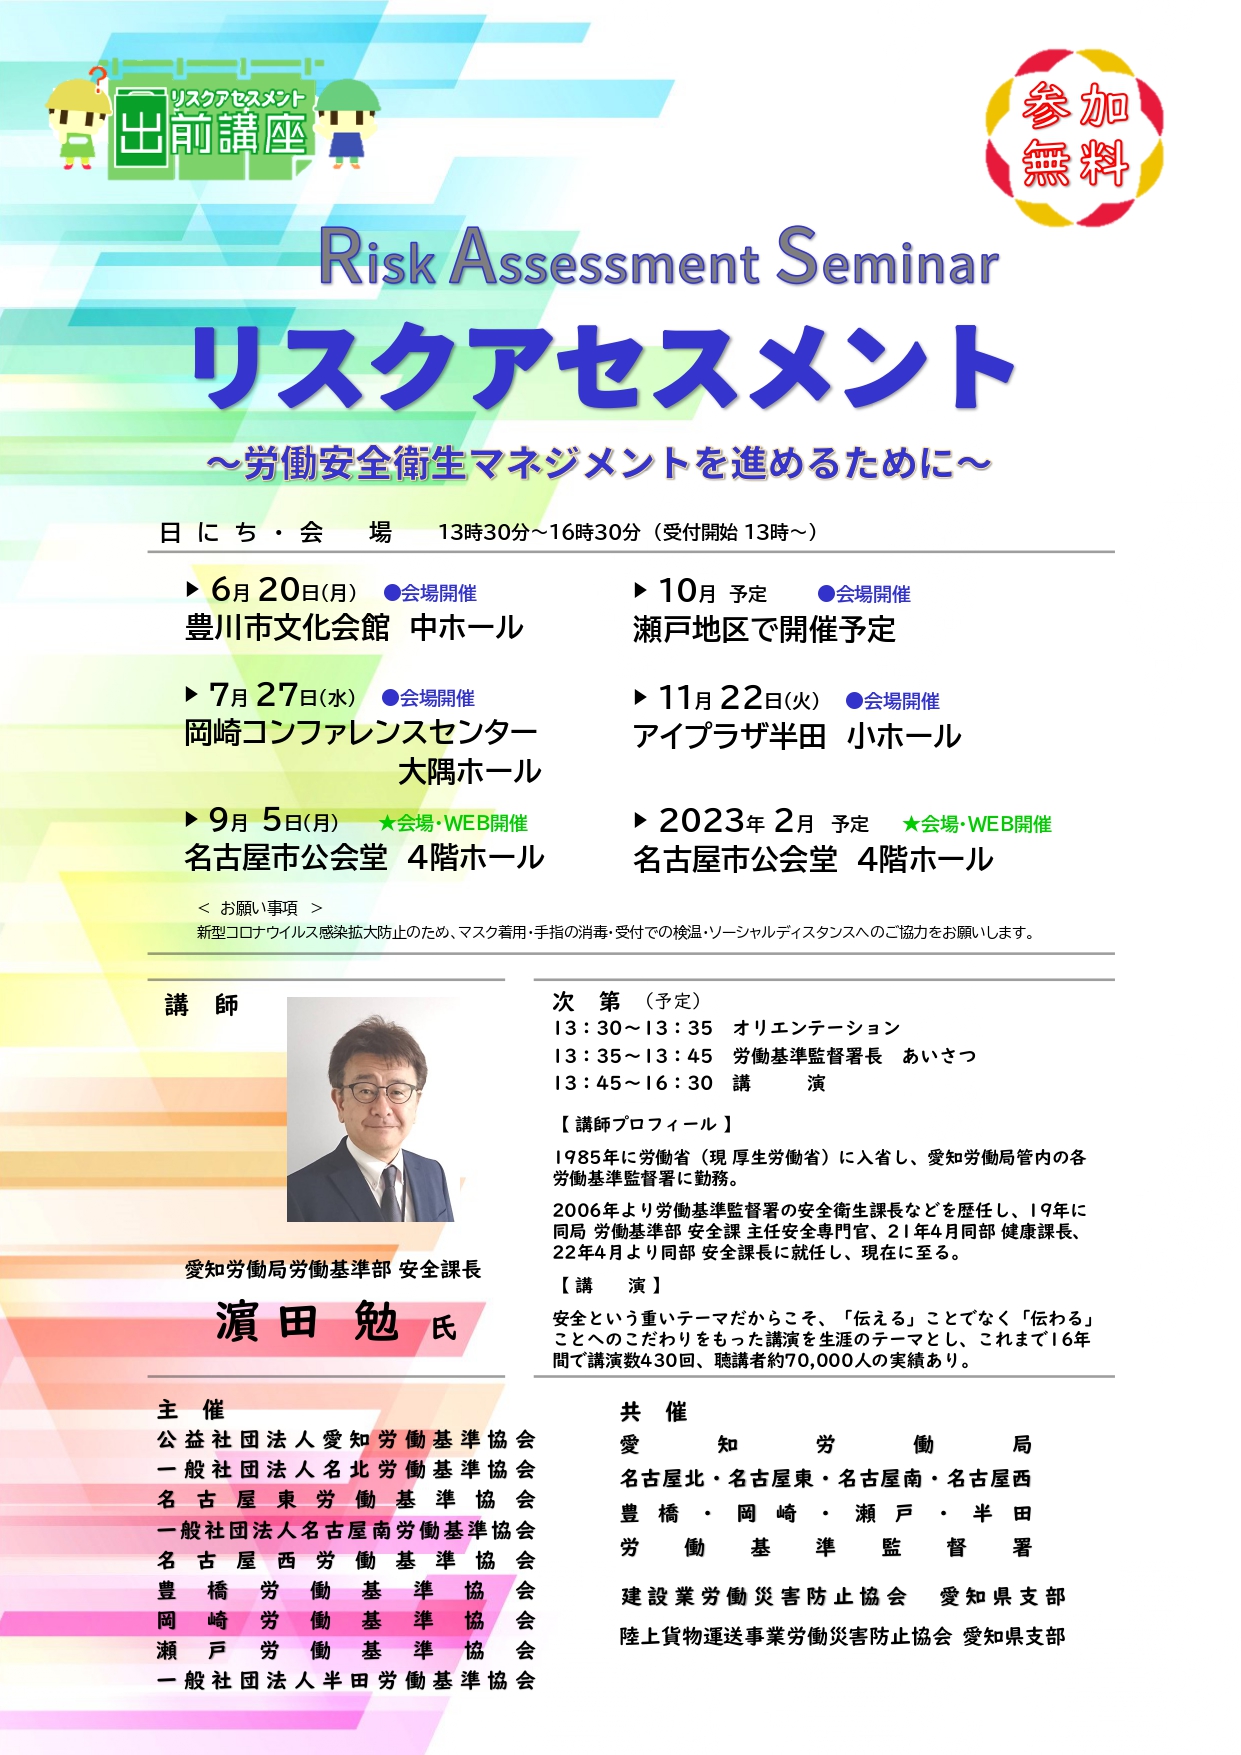 HPお知らせ用_リーフ全体版-P1.jpg